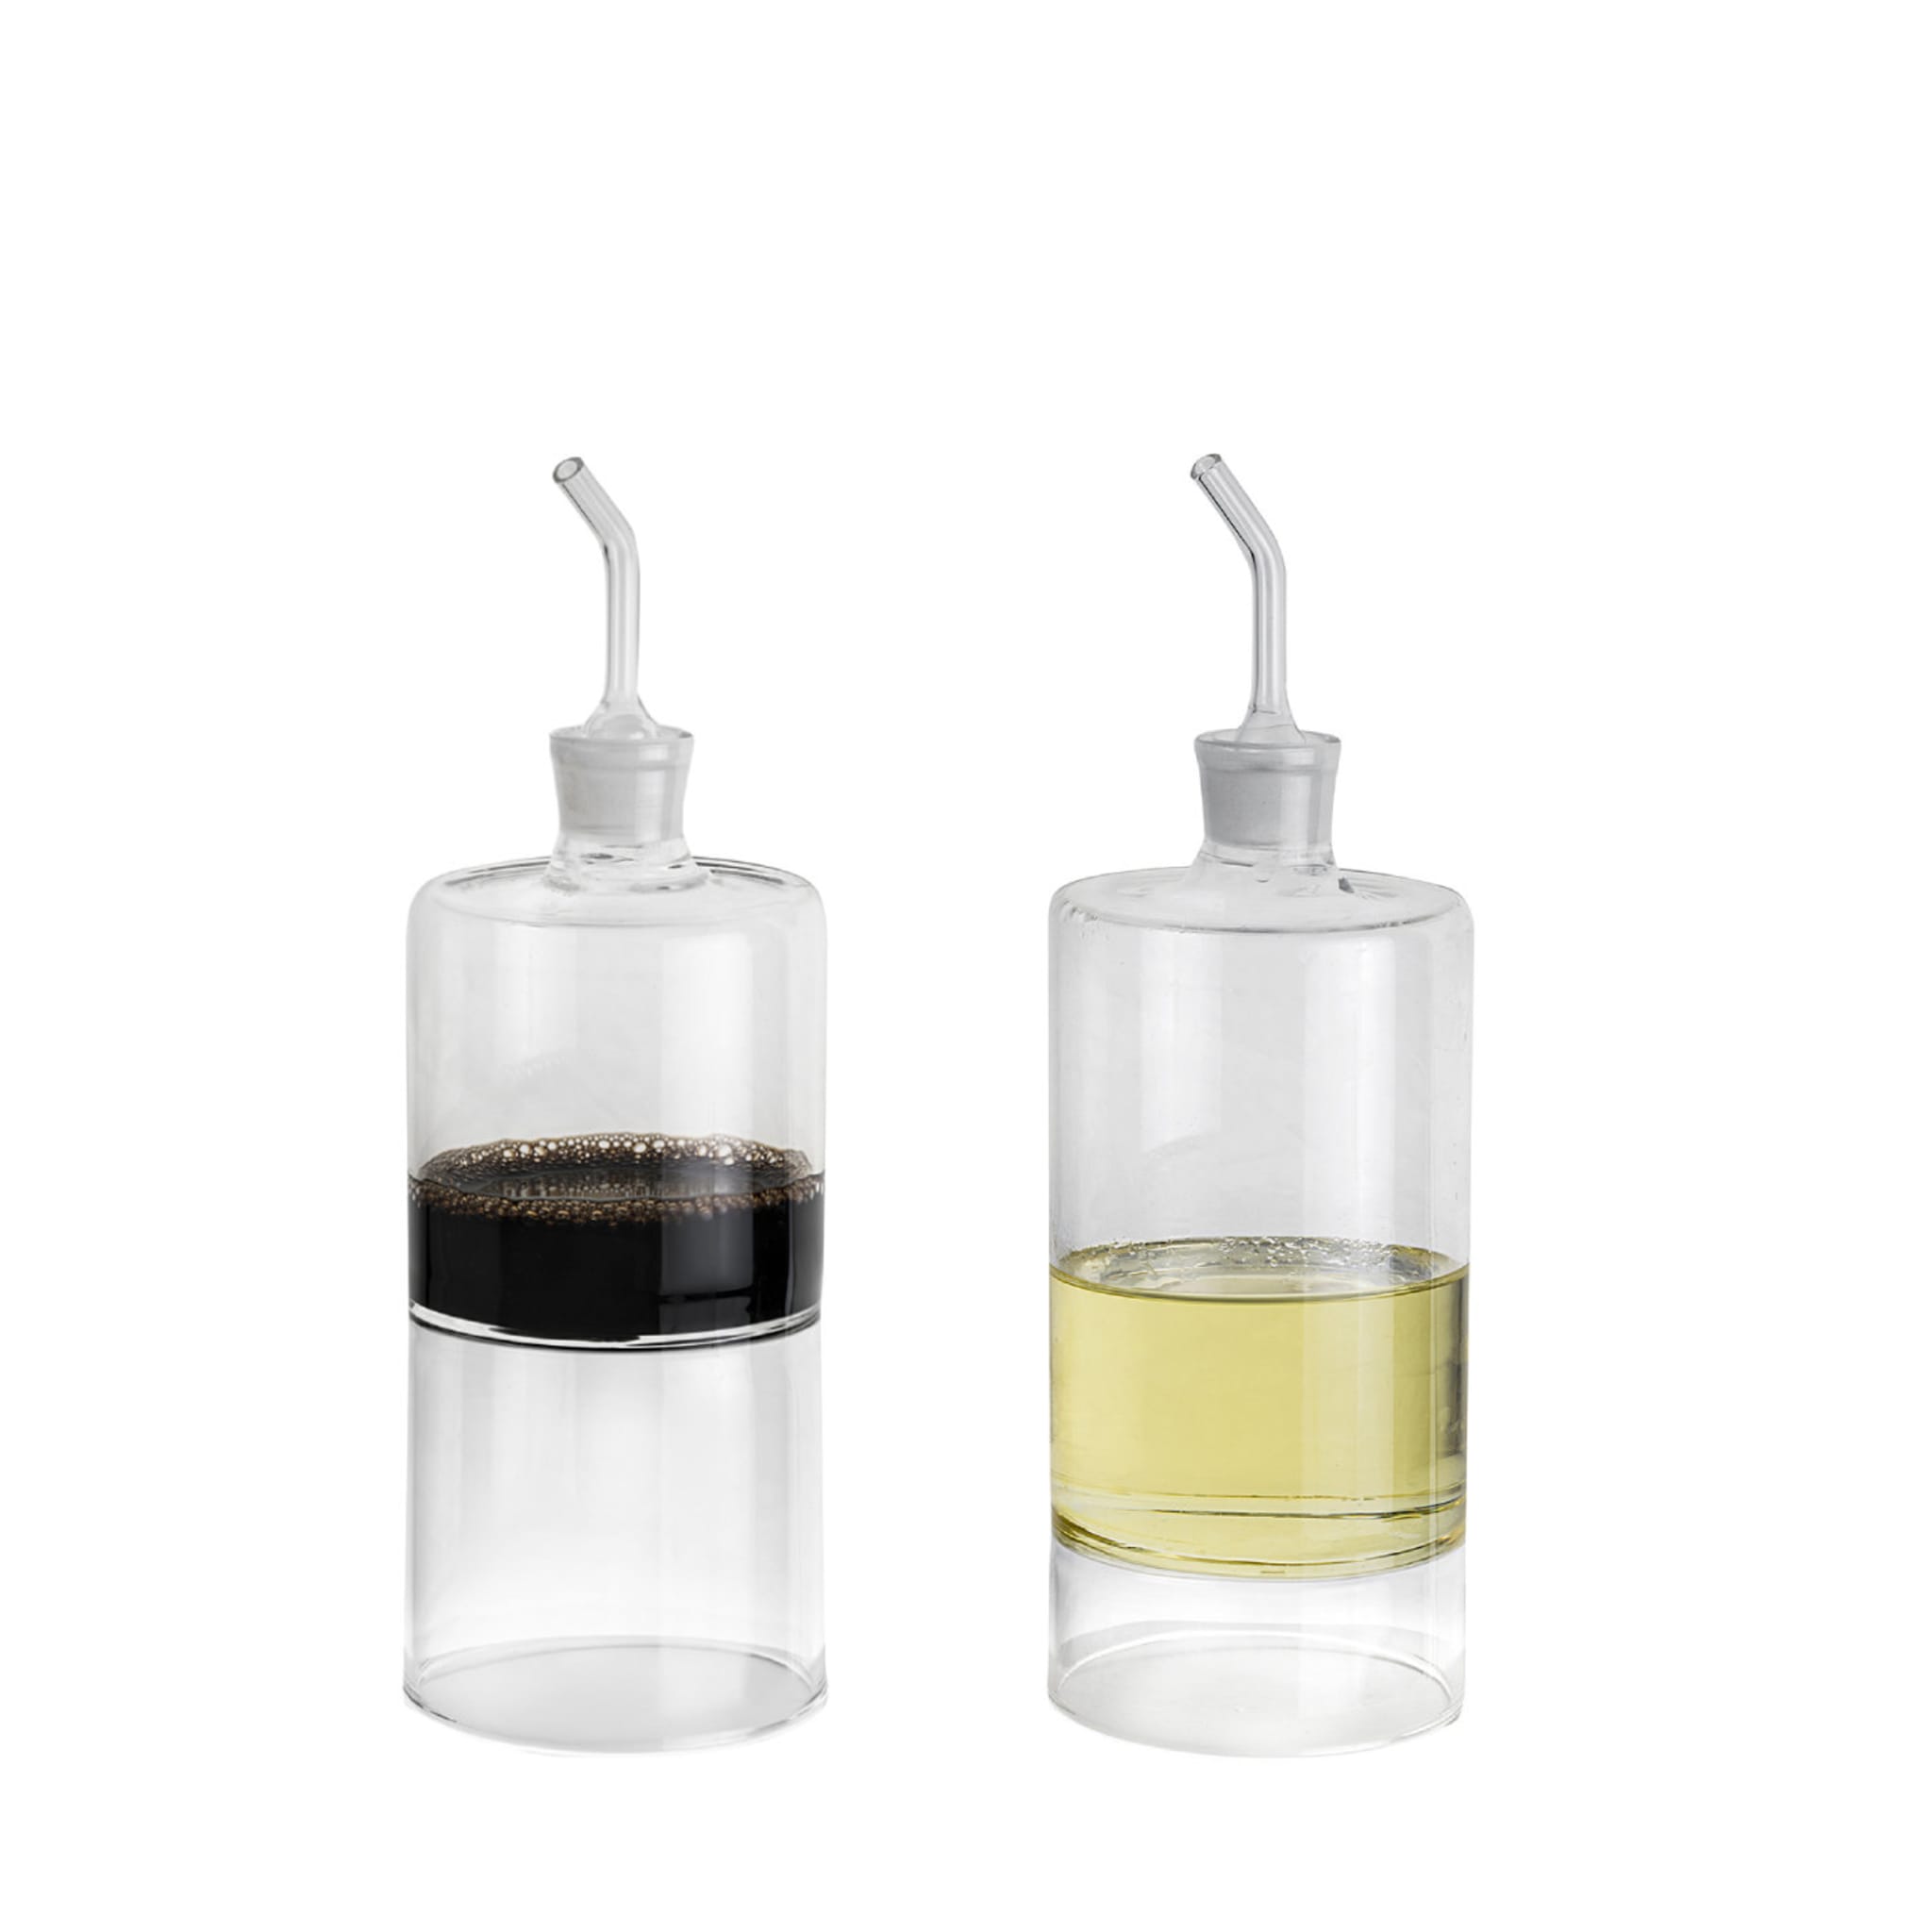 Stile Set of Oil and Vinegar Glass Bottles - Alternative view 1